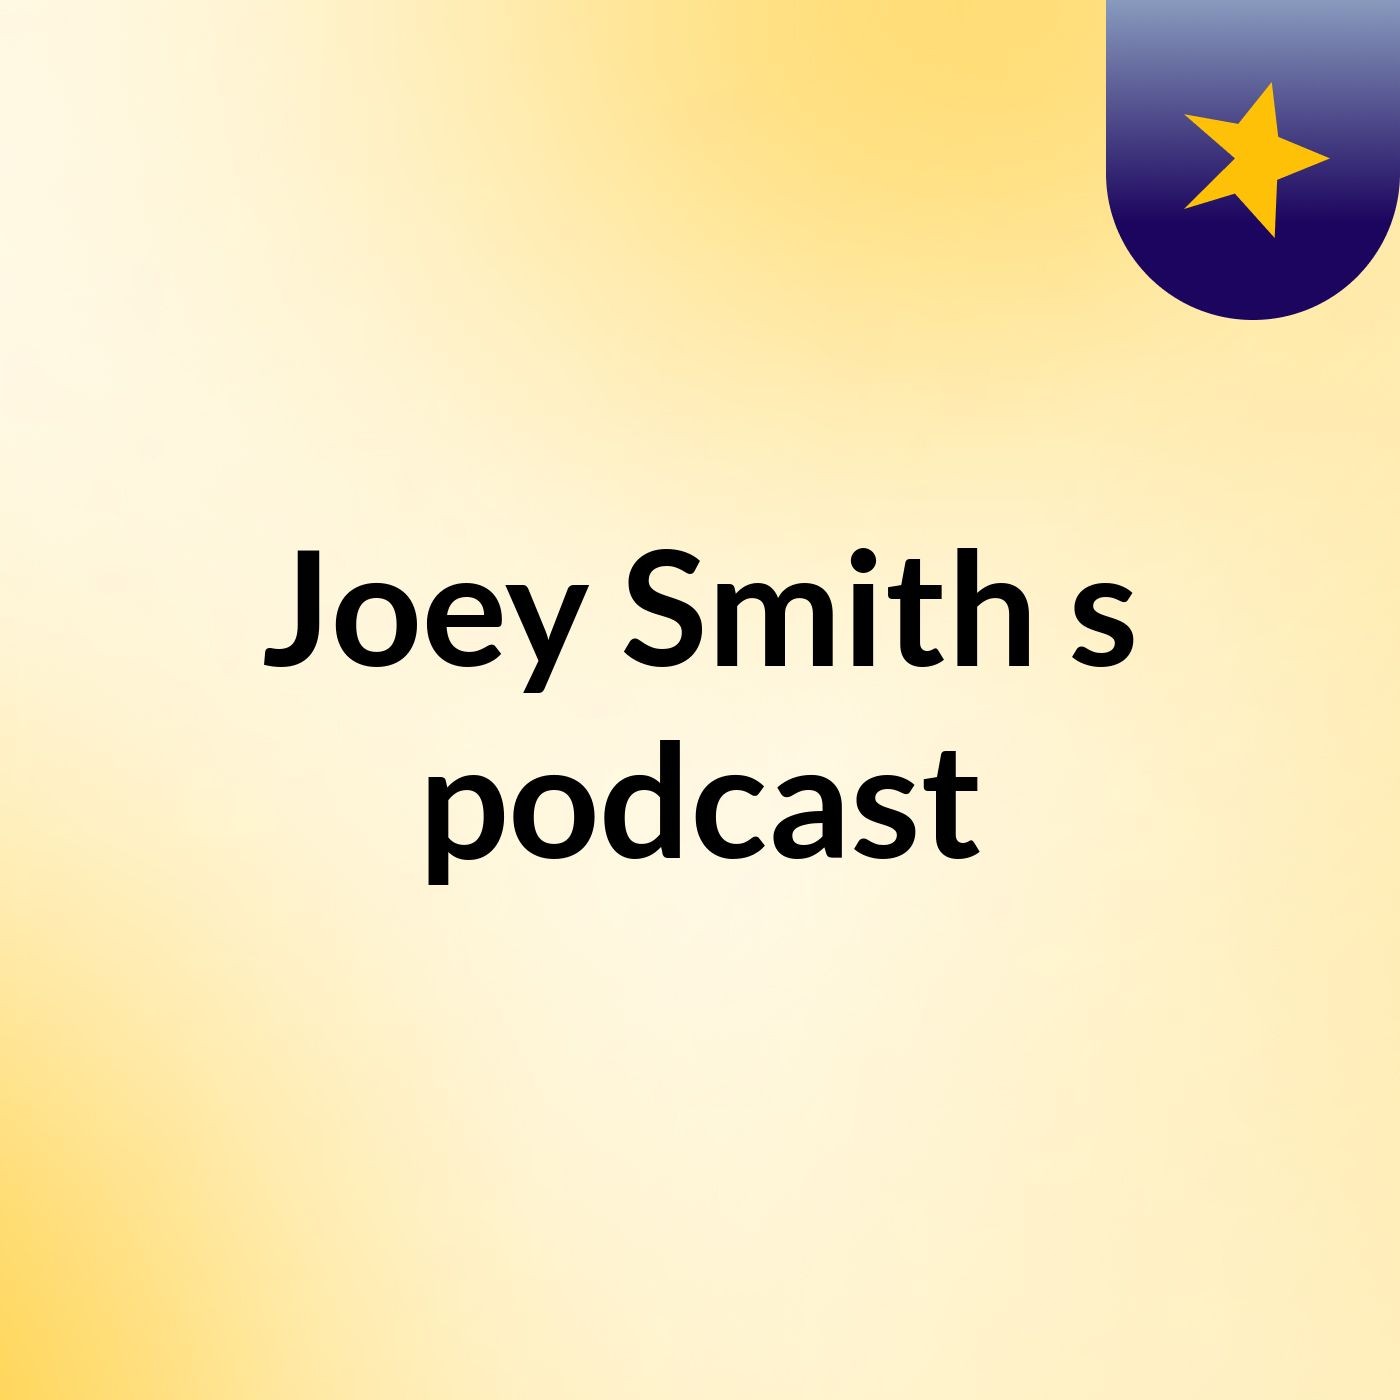 Joey Smith's podcast